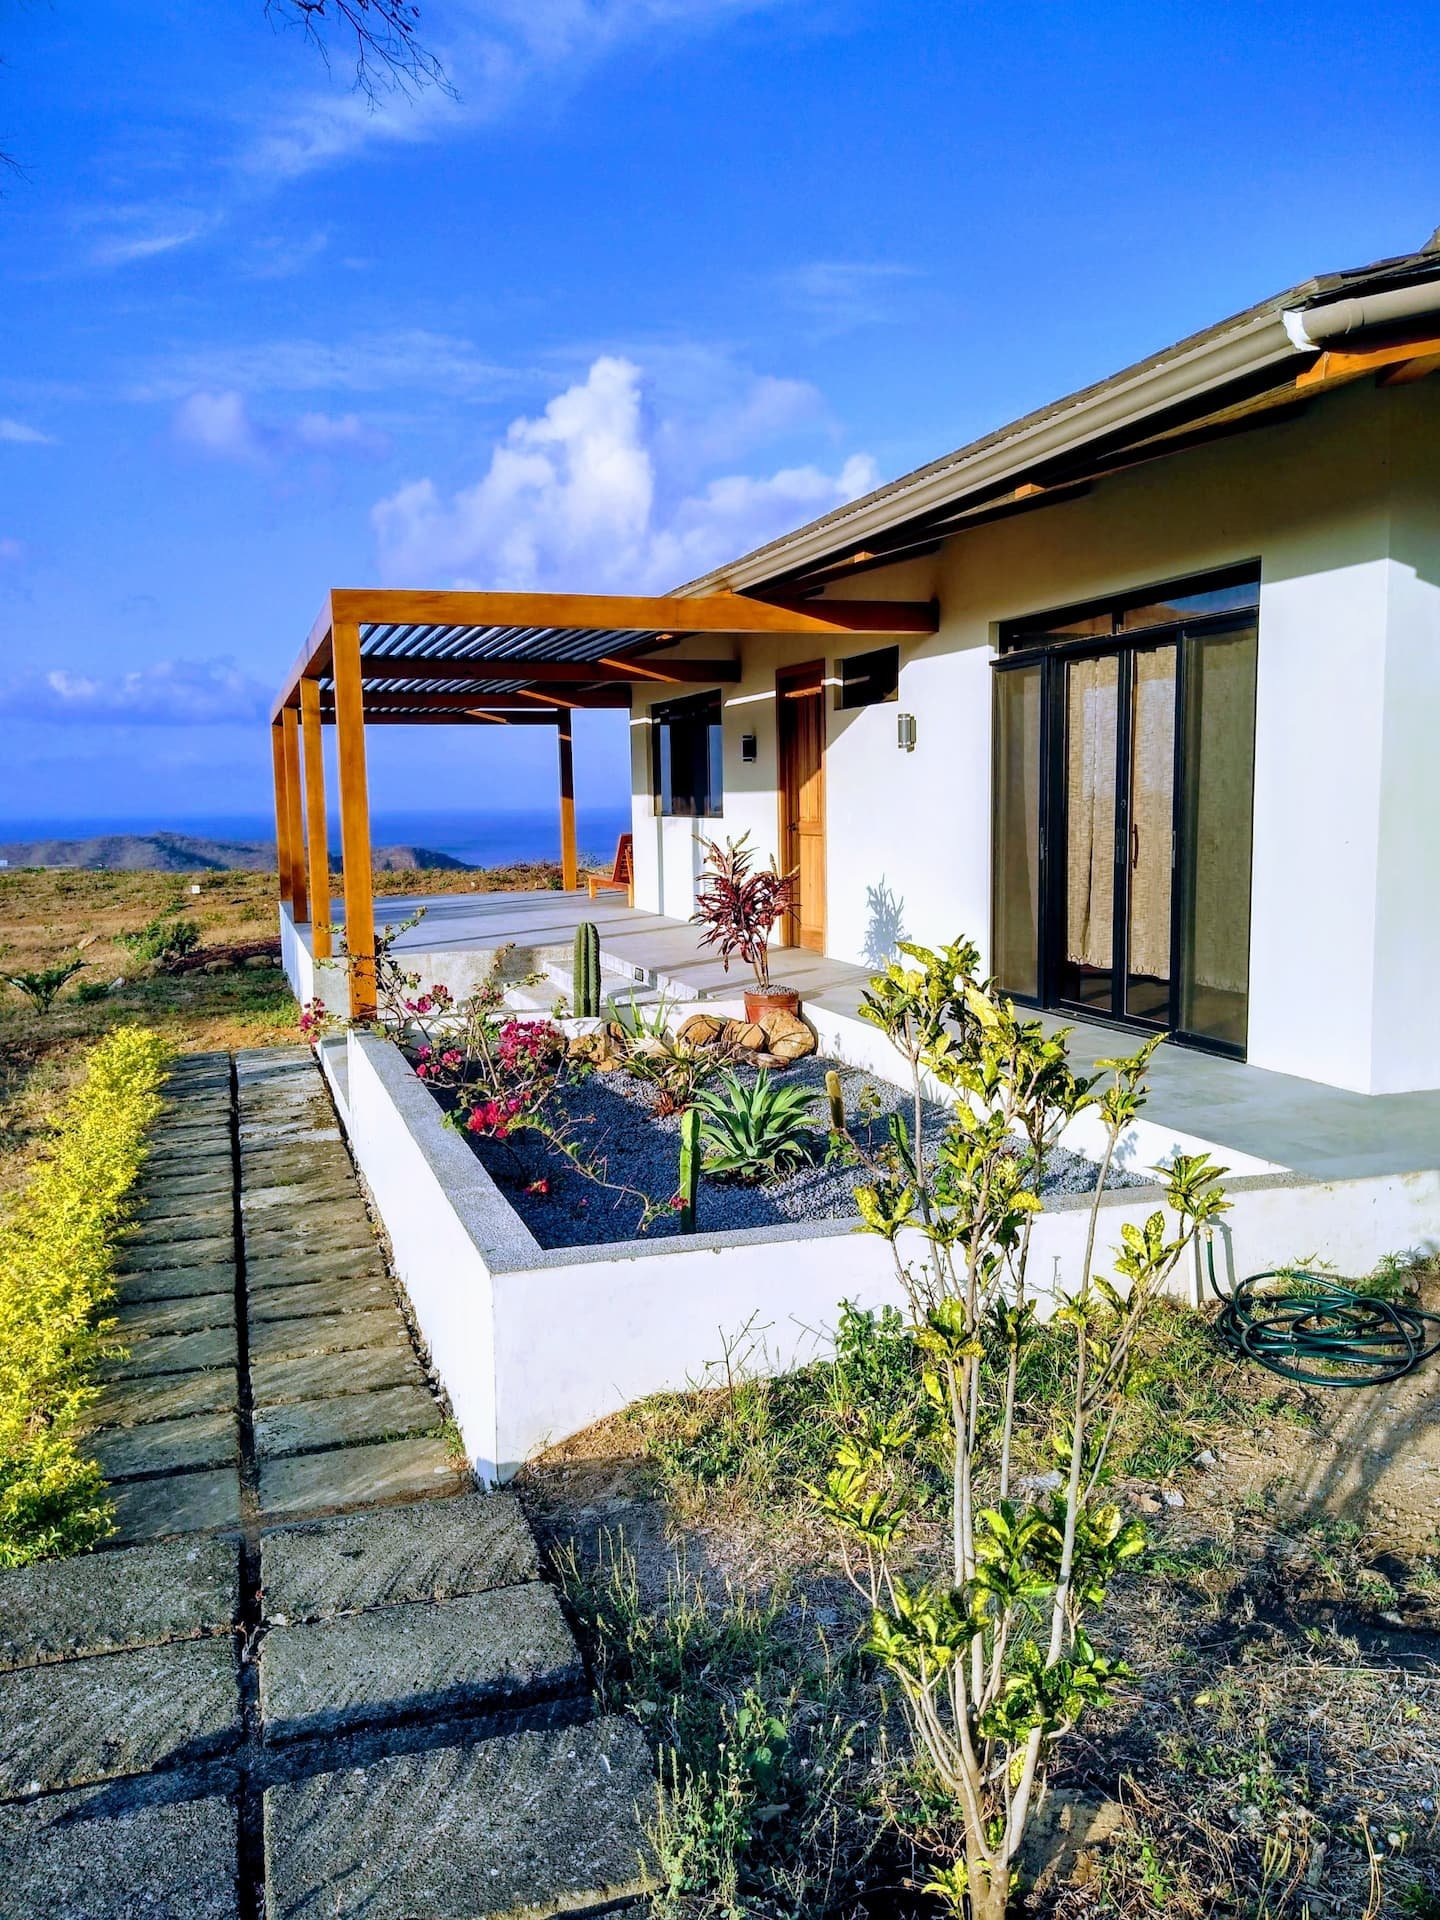 Real Estate Homes For Sale Property San Juan Del Sur Nicaragua 17.jpg